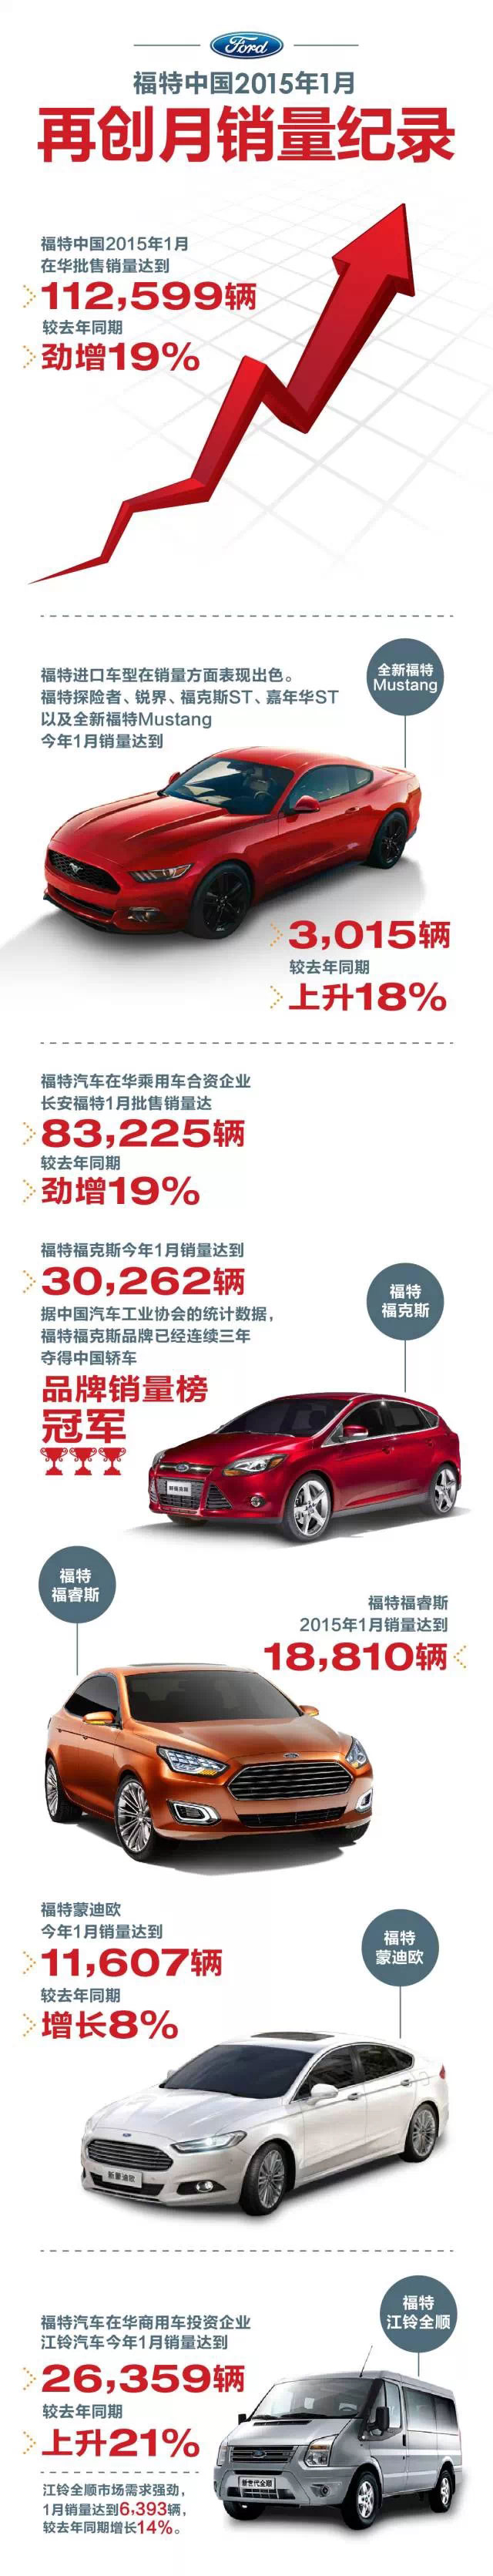 福睿斯劲销18810辆 福特中国公布2015年1月销量